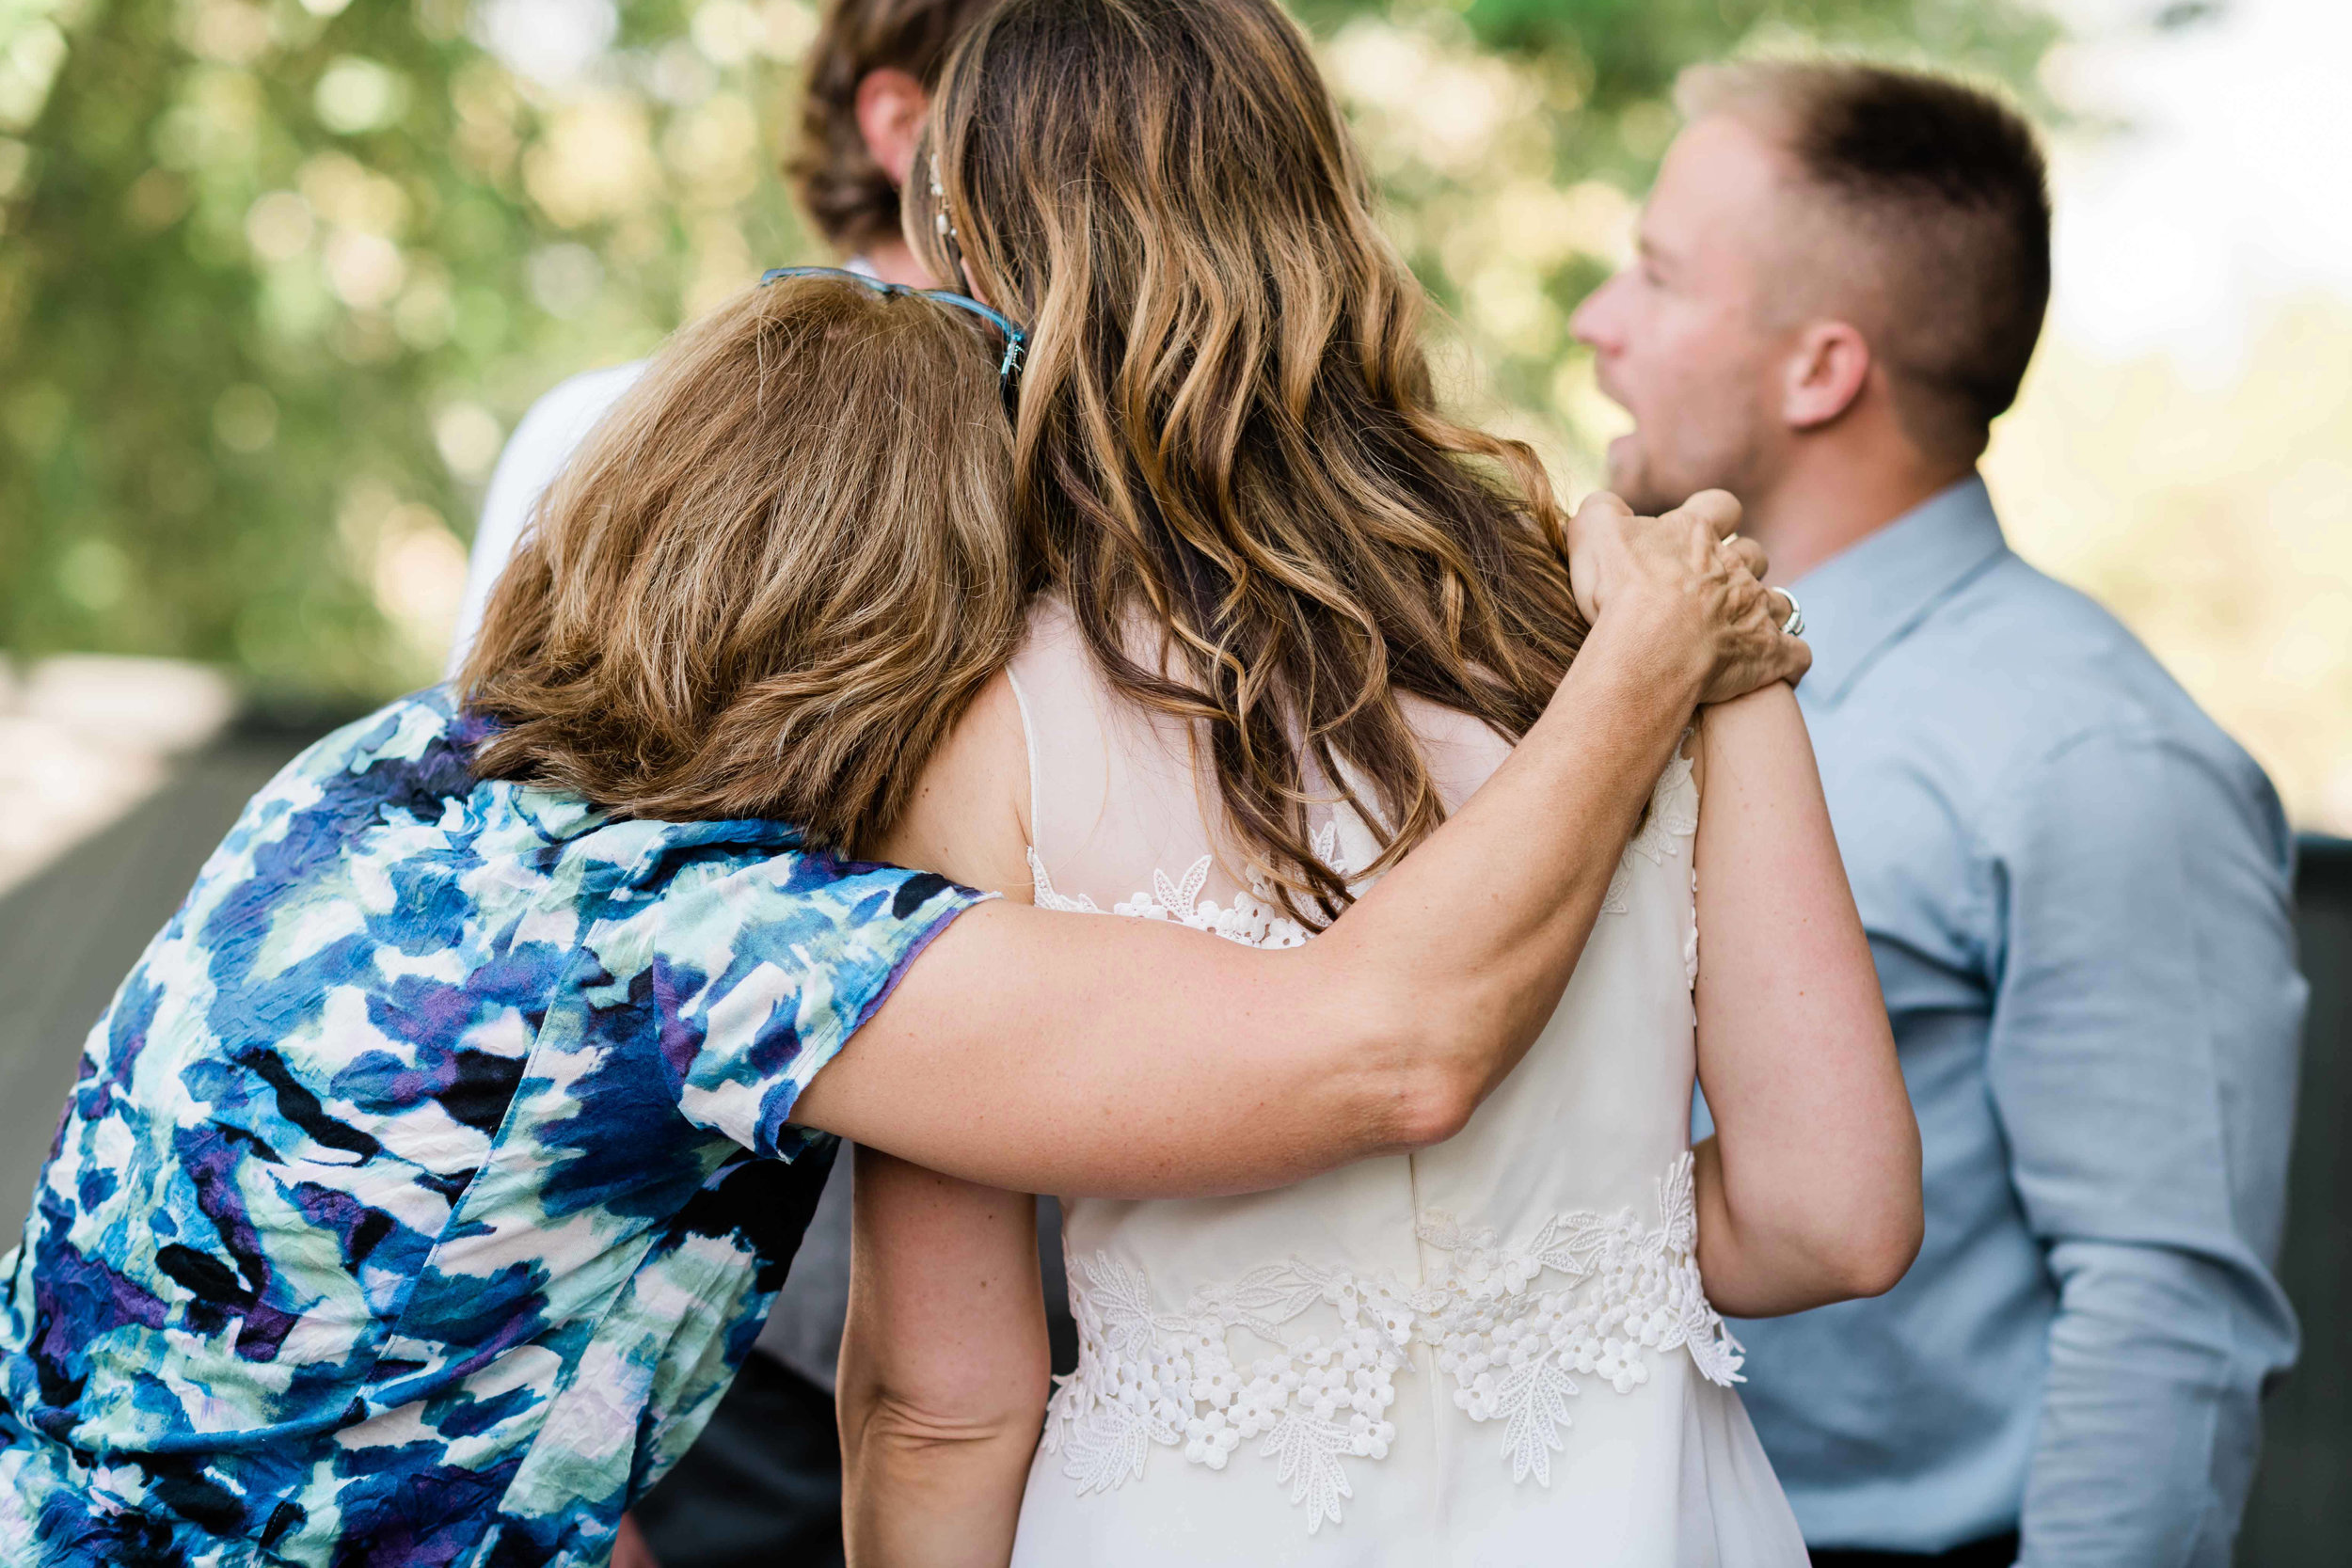 Wedding guest wraps her arm around the bride